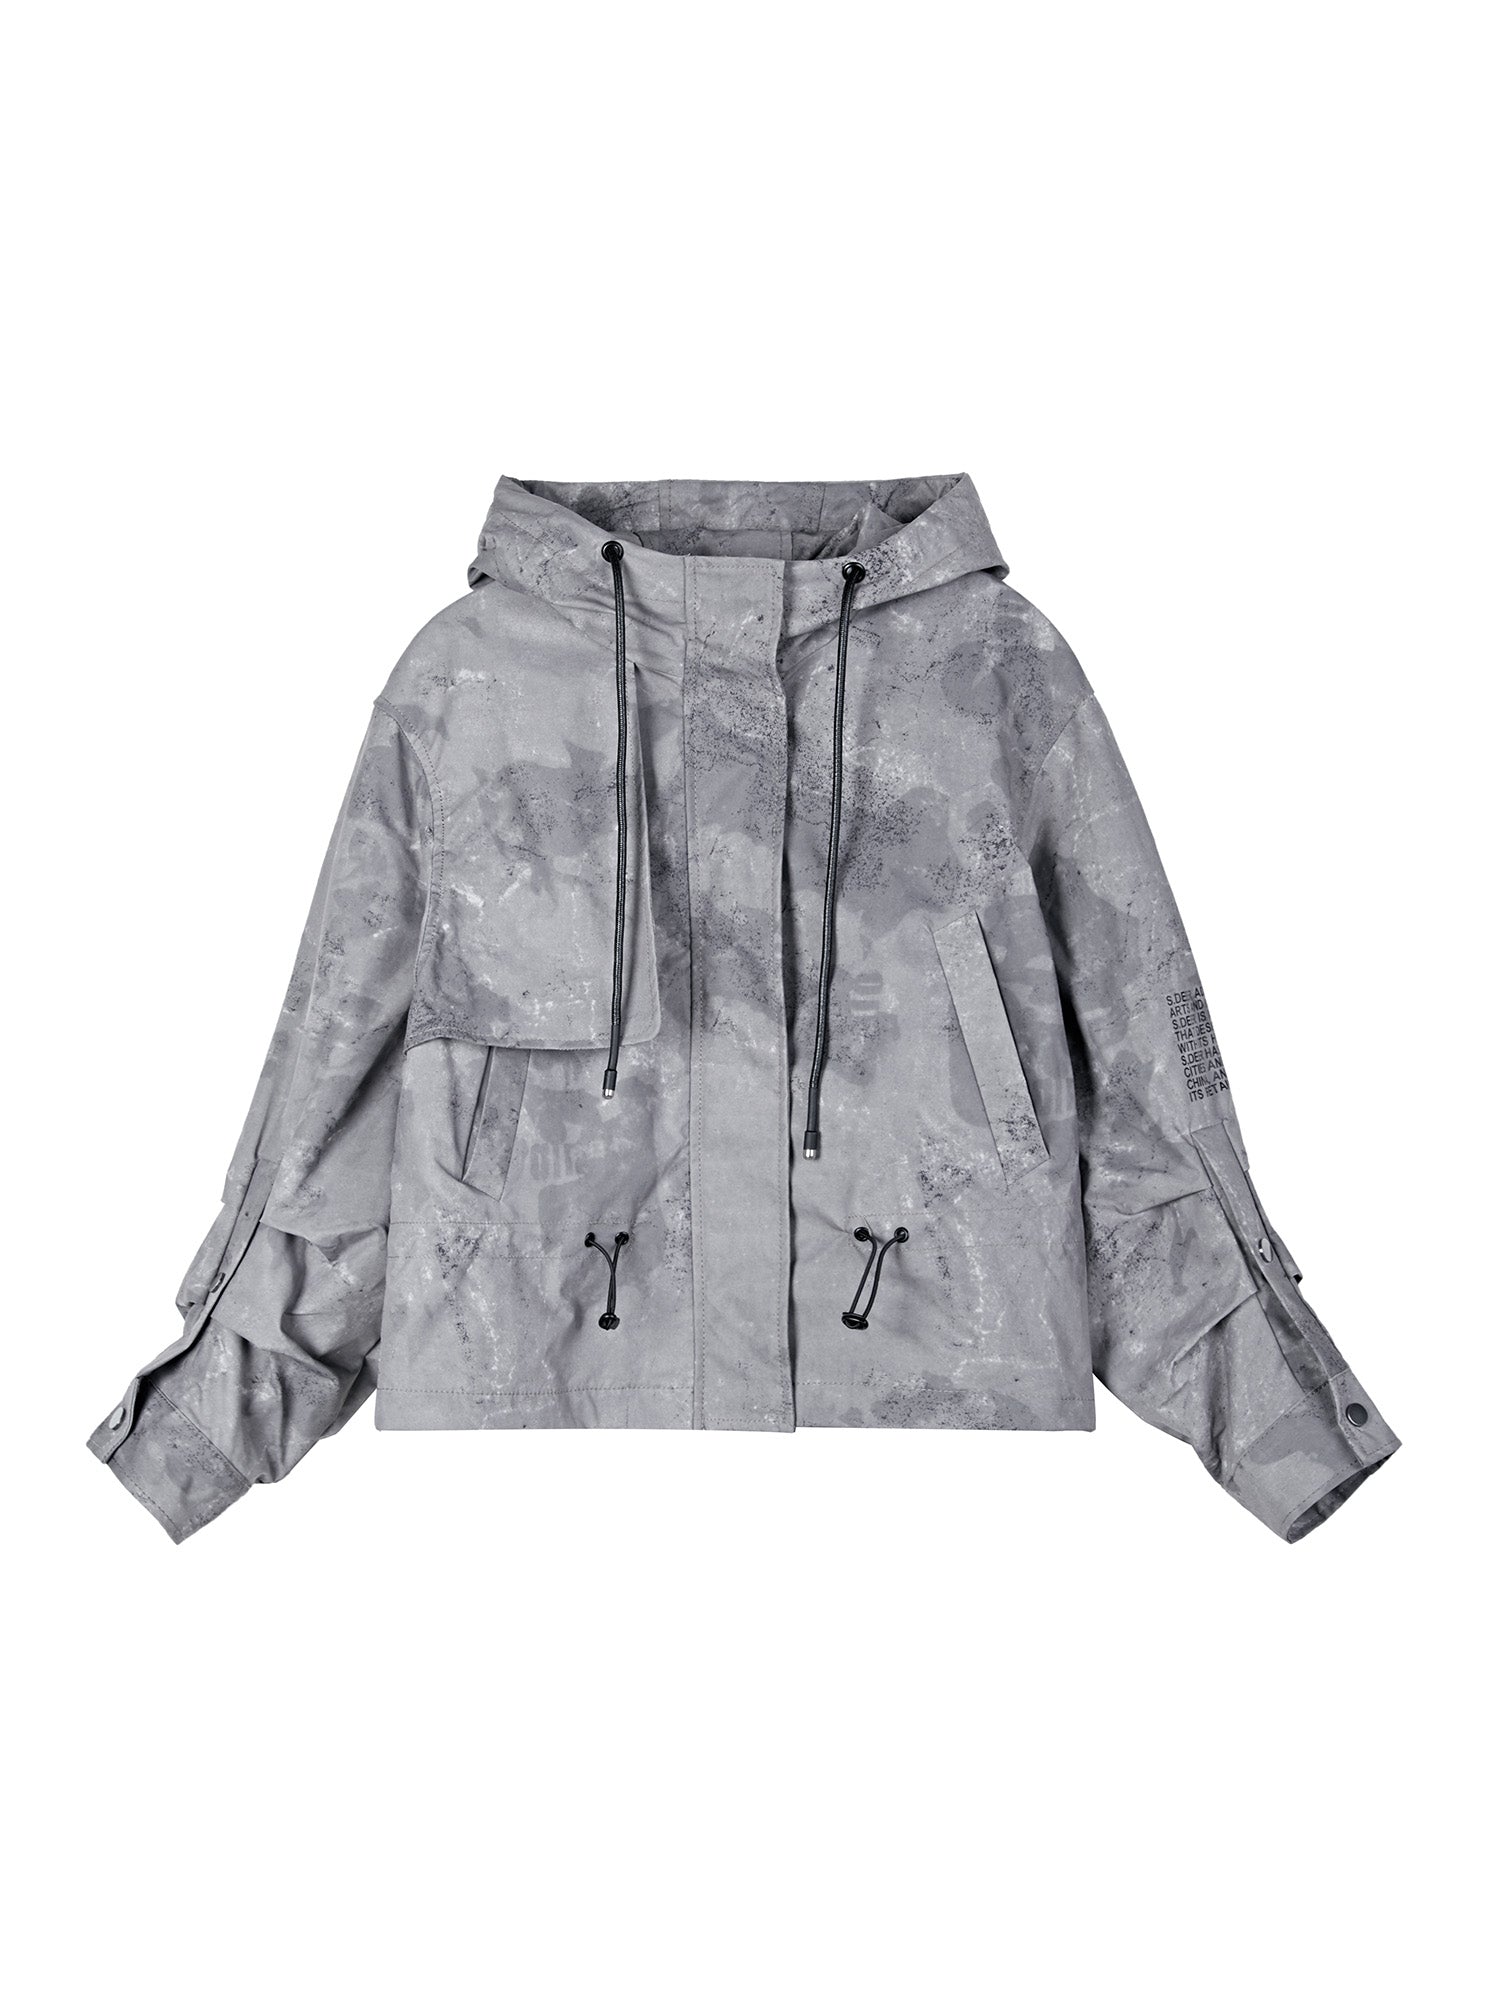 Women's Zip Up Hooded Cropped Jacket Coat - S·DEER